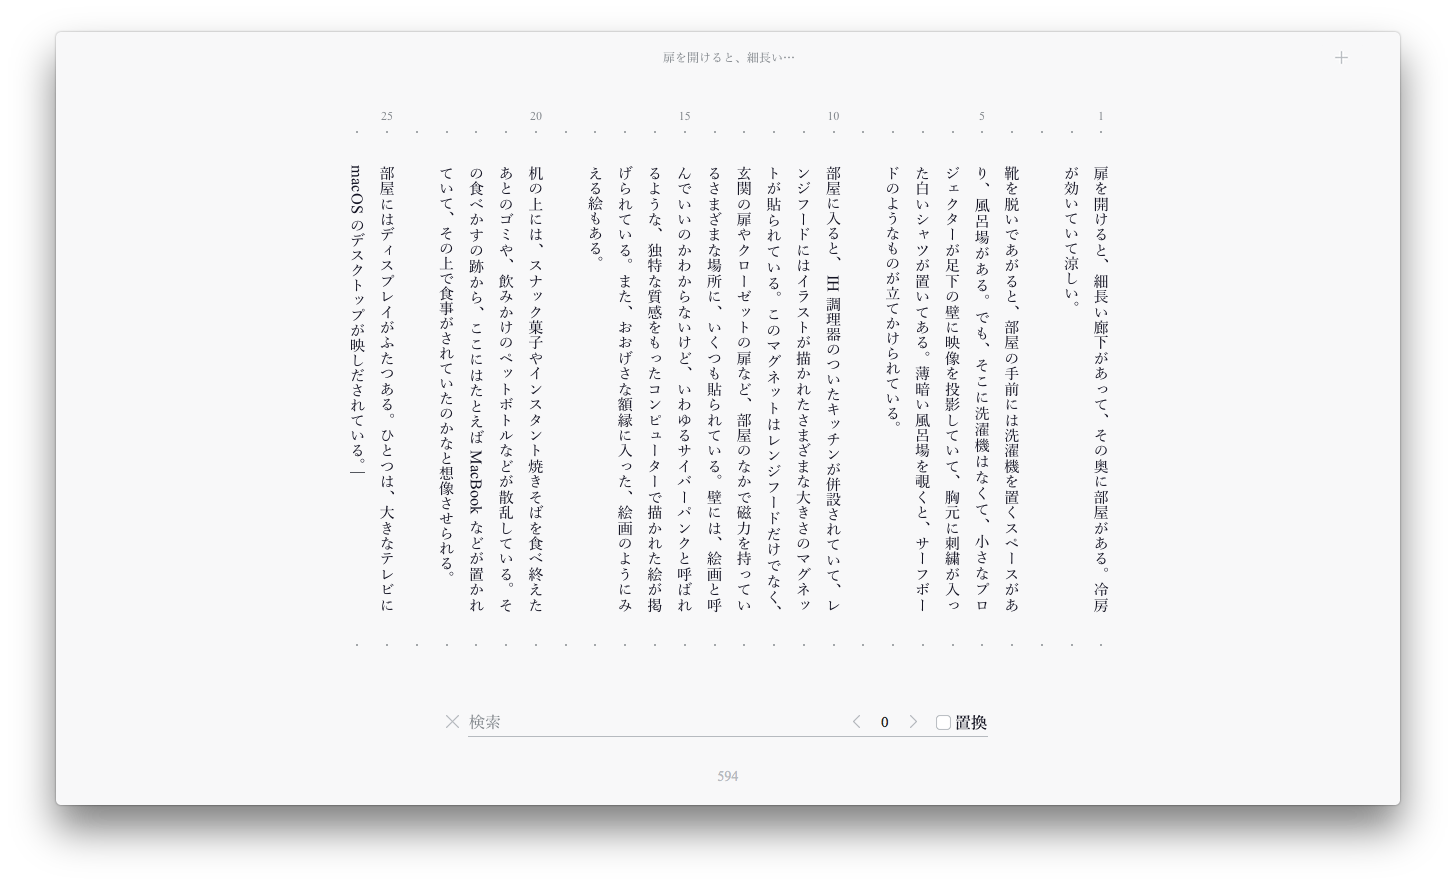 Shikakun Auf Twitter 日本デザインセンターが開発中の 書く気分を高めるテキストエディタ こと Stone のレビューに参加したので 試用版を利用させてもらえることになった 横書きもできるけど これは特に縦書きエディタ業界の歴史が大きく動くのでは T